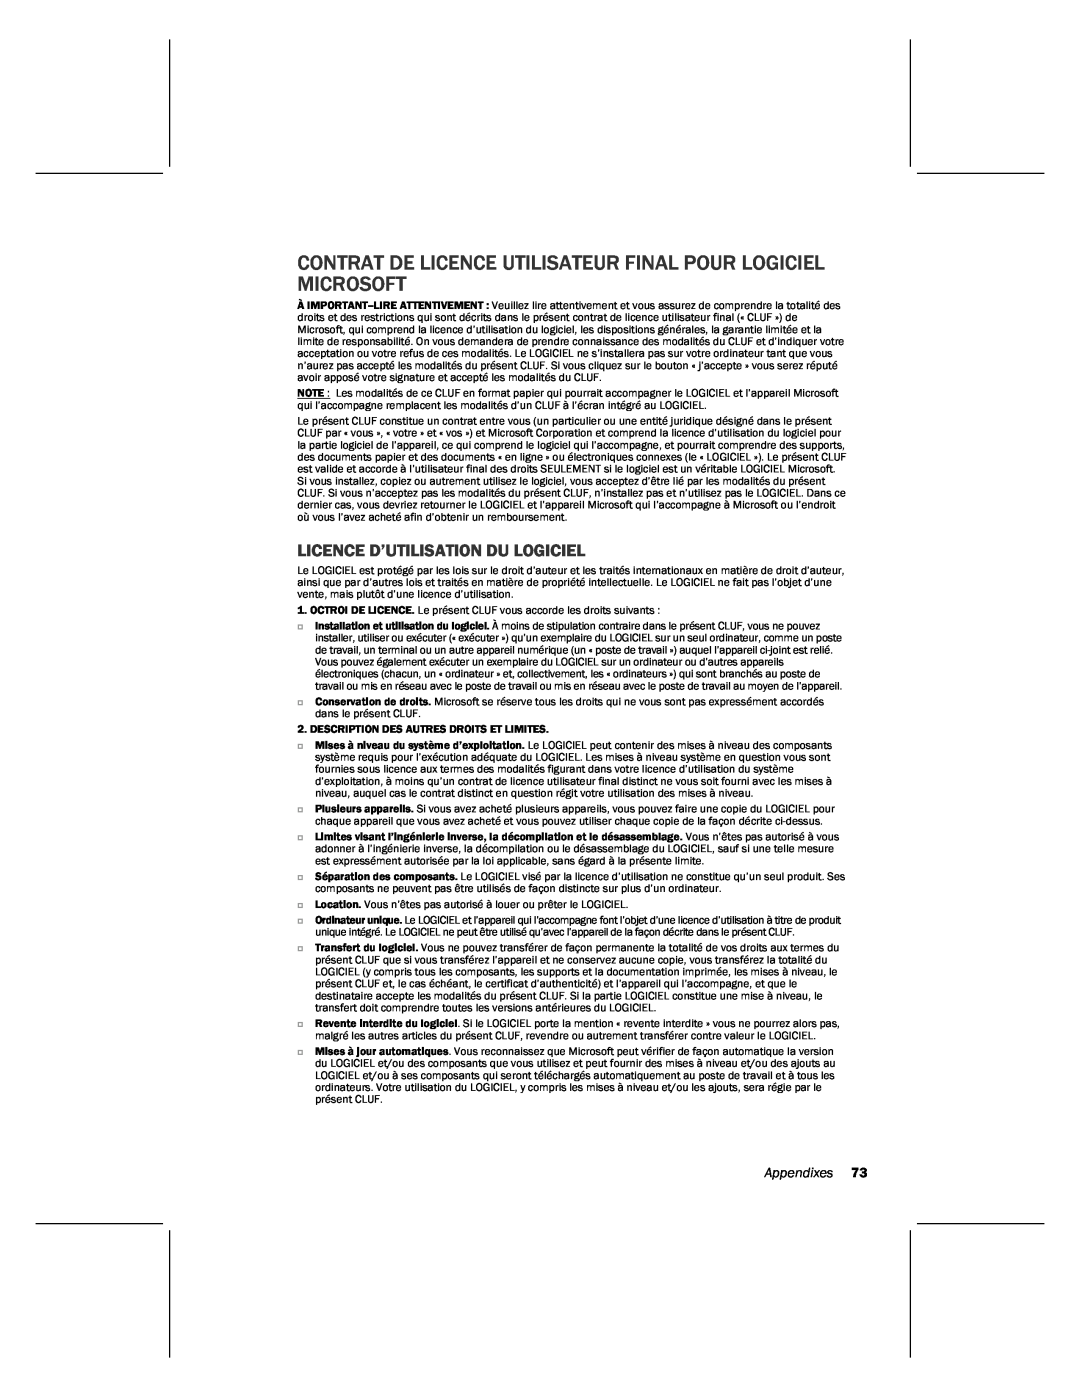 Microsoft MN-820 manual Contrat De Licence Utilisateur Final Pour Logiciel Microsoft, Licence D’Utilisation Du Logiciel 